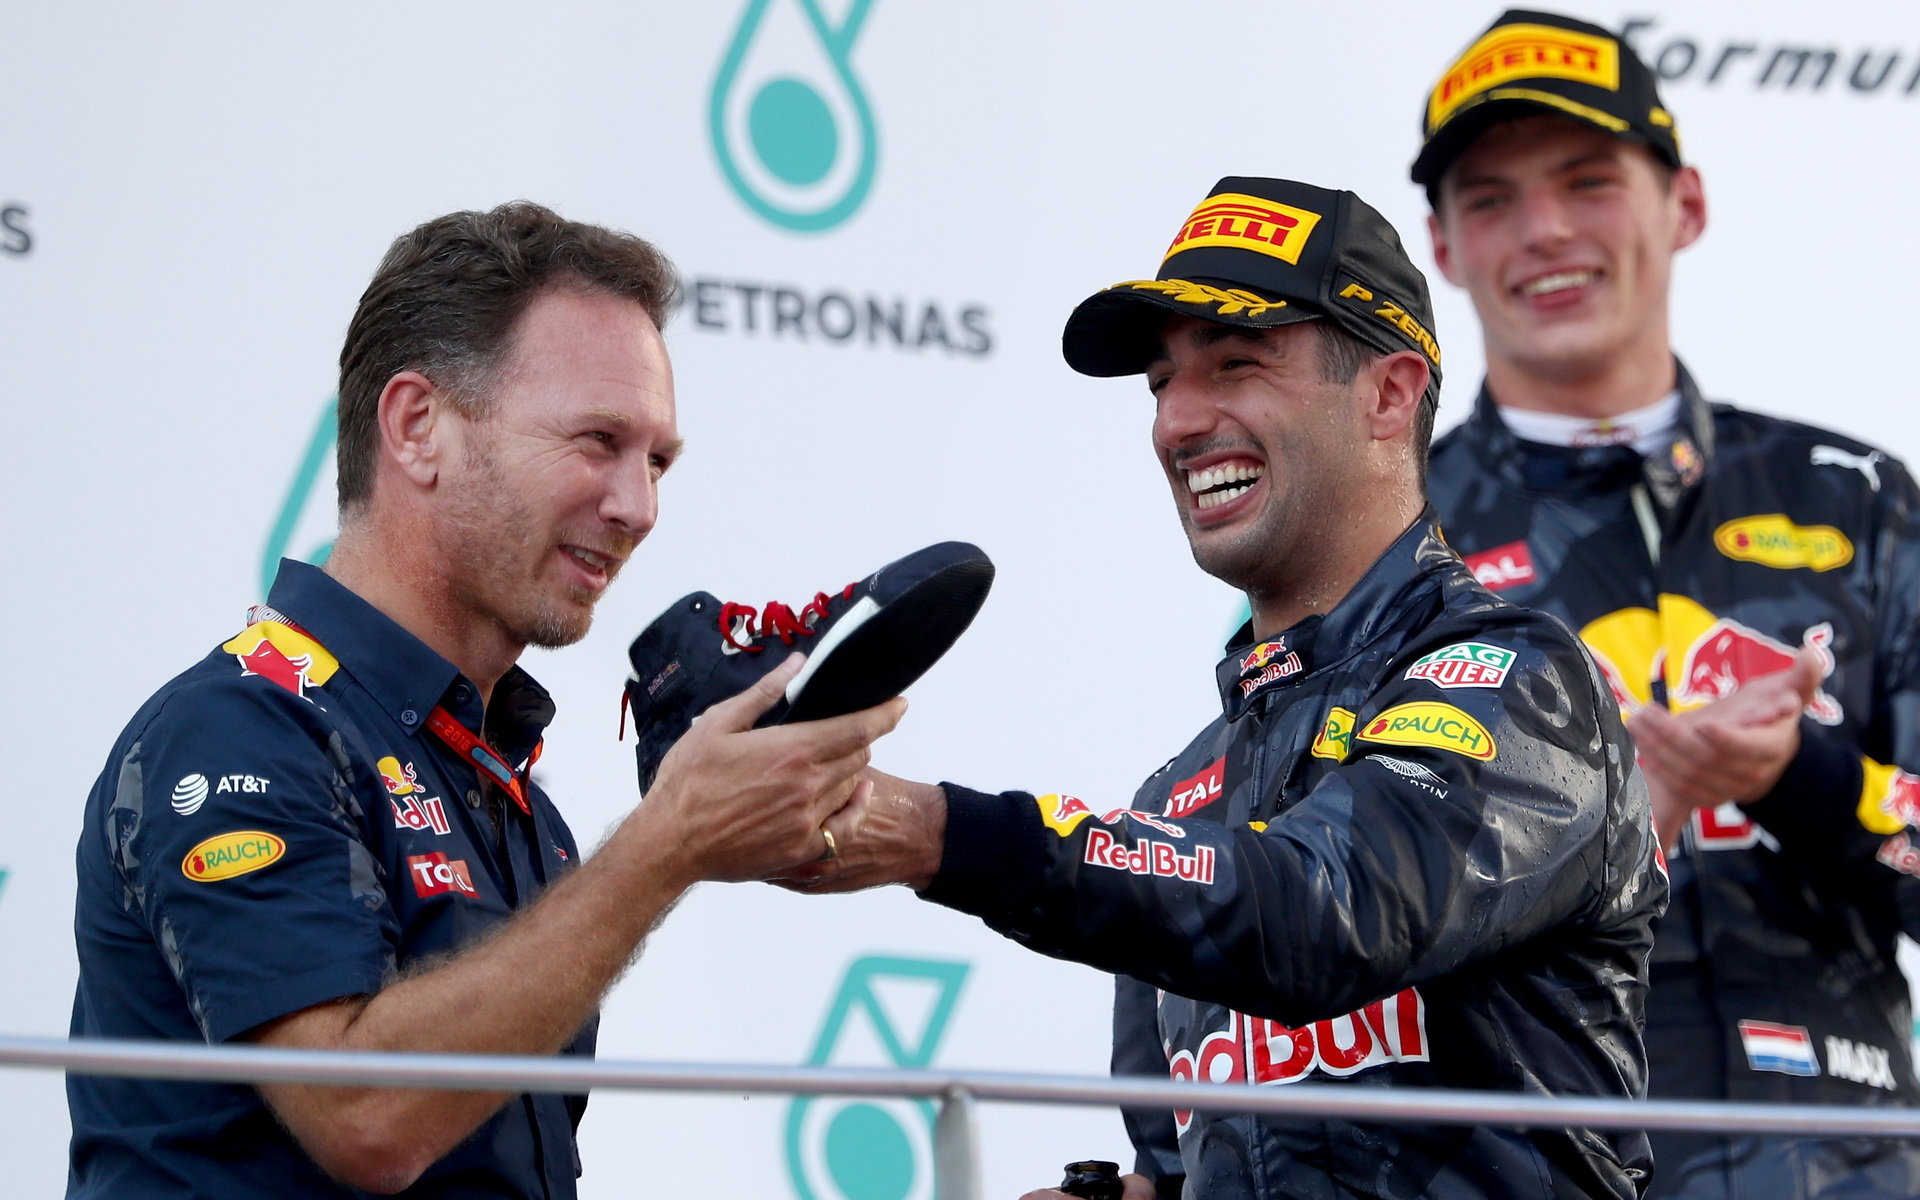 Christian Horner, Daniel Ricciardo a Max Verstappen na pódiu po závodě v Malajsii